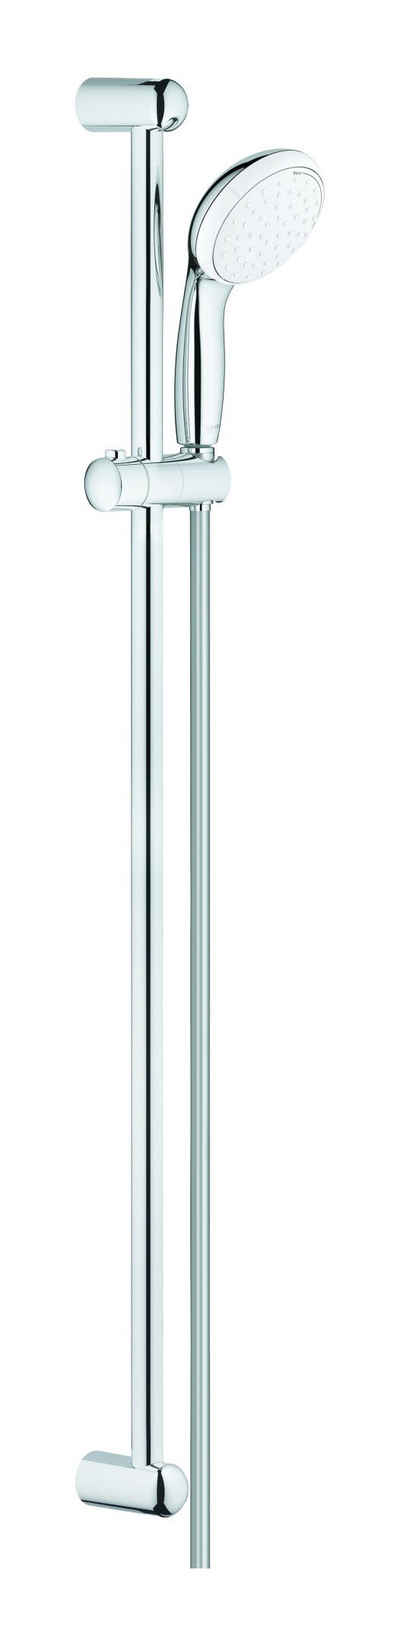 Grohe Stangenbrause-Set Tempesta 100, Höhe 92 cm, 2 Strahlart(en), Brausestangenset - Chrom